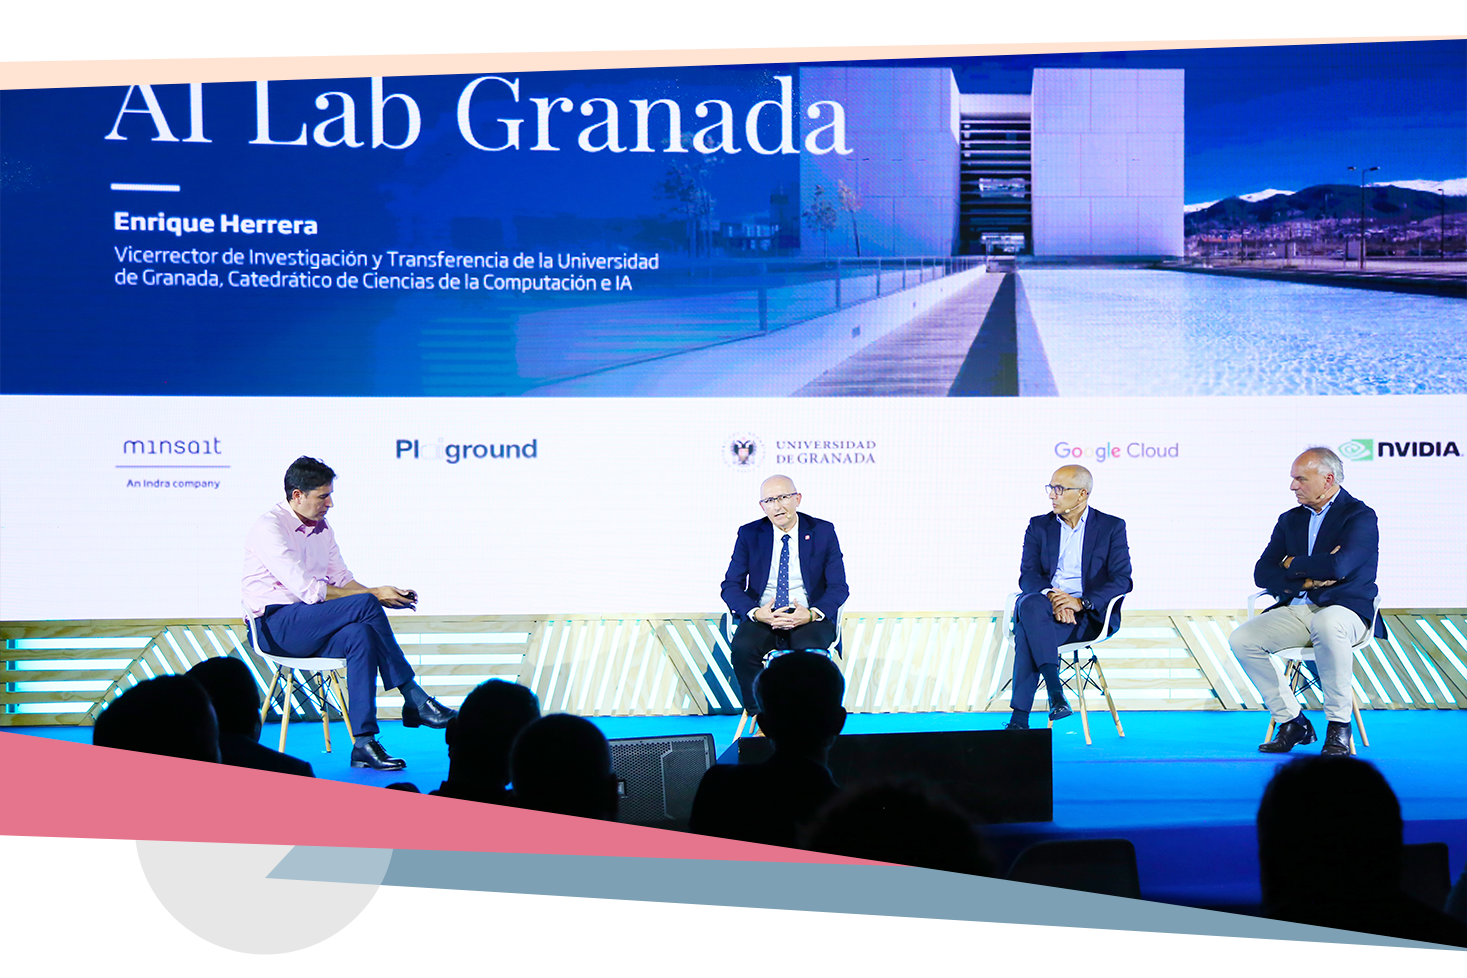 José Luis Flórez, responsable de Plaiground, participando en una mesa redonda en el AI Lab de Granada